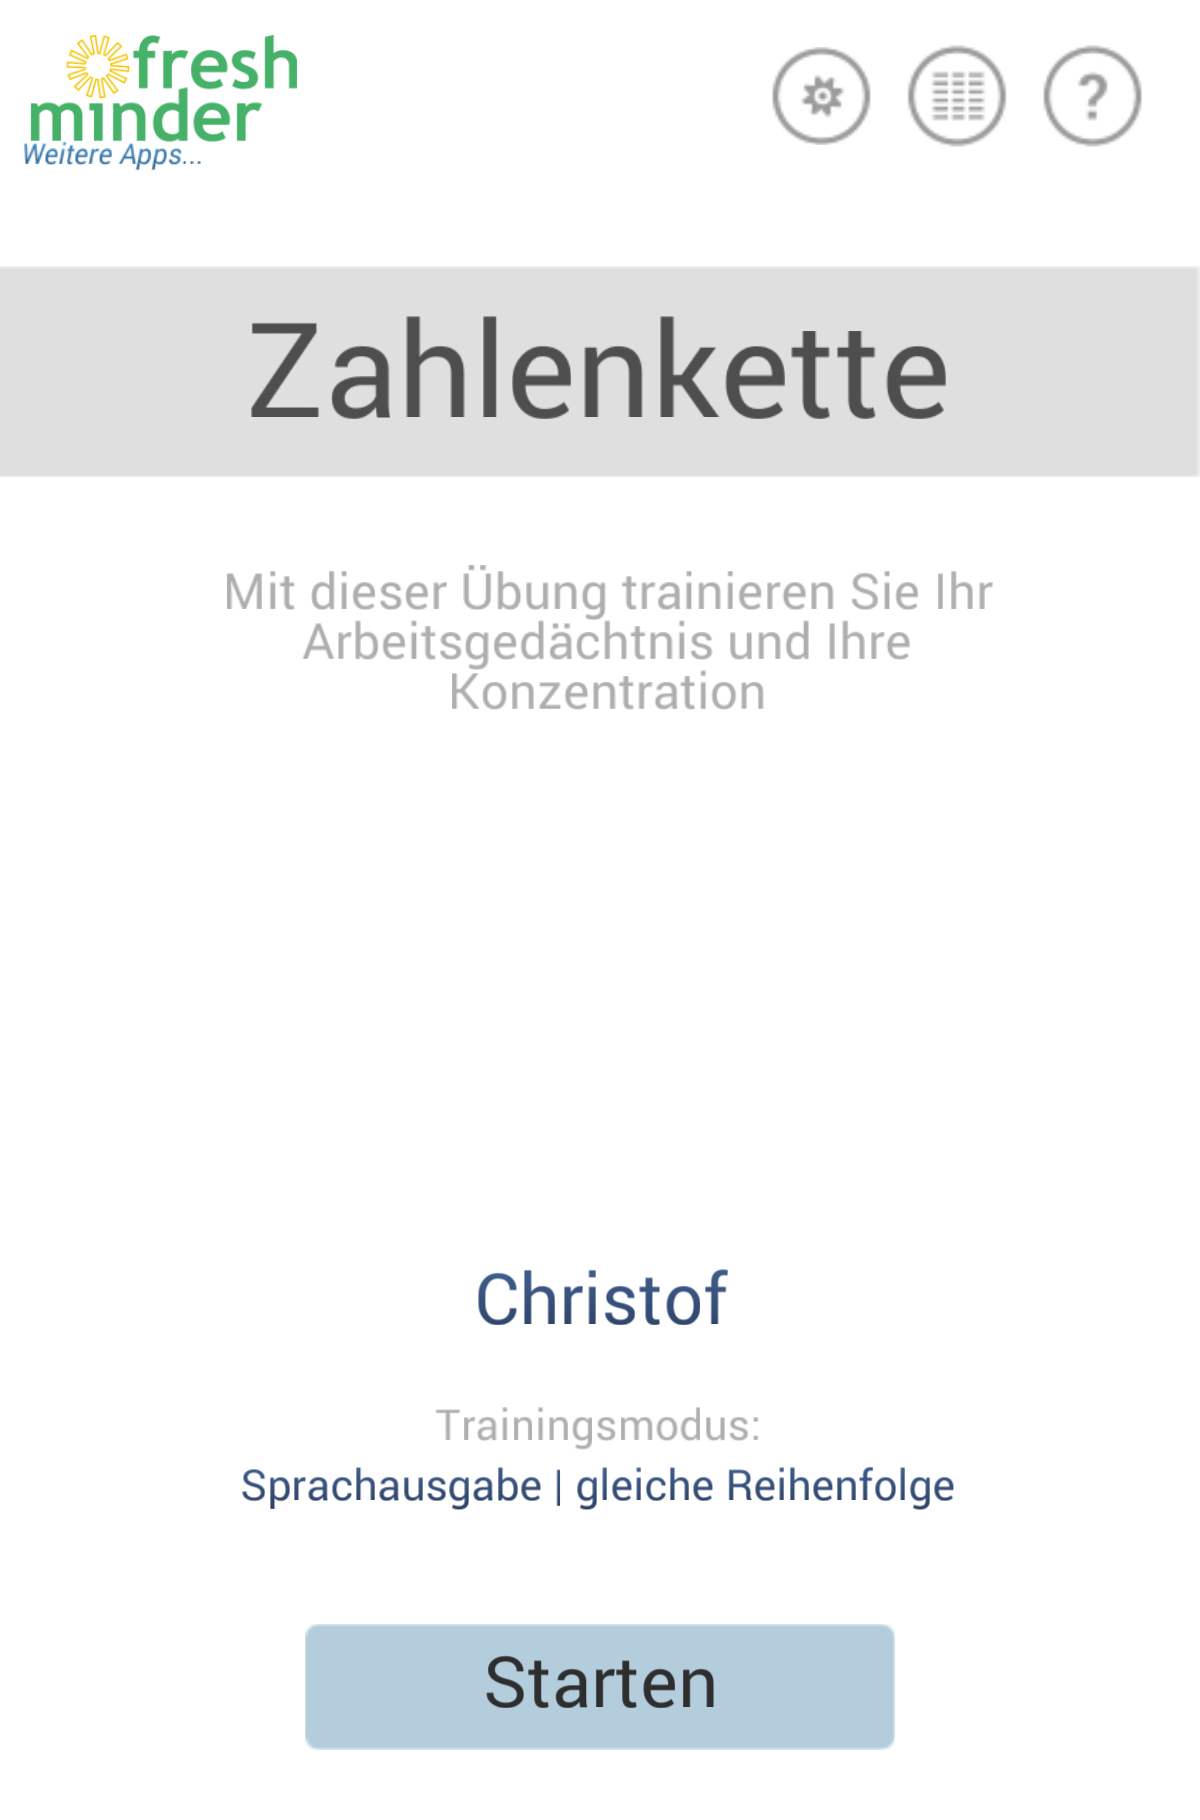 Android application Zahlenkette screenshort